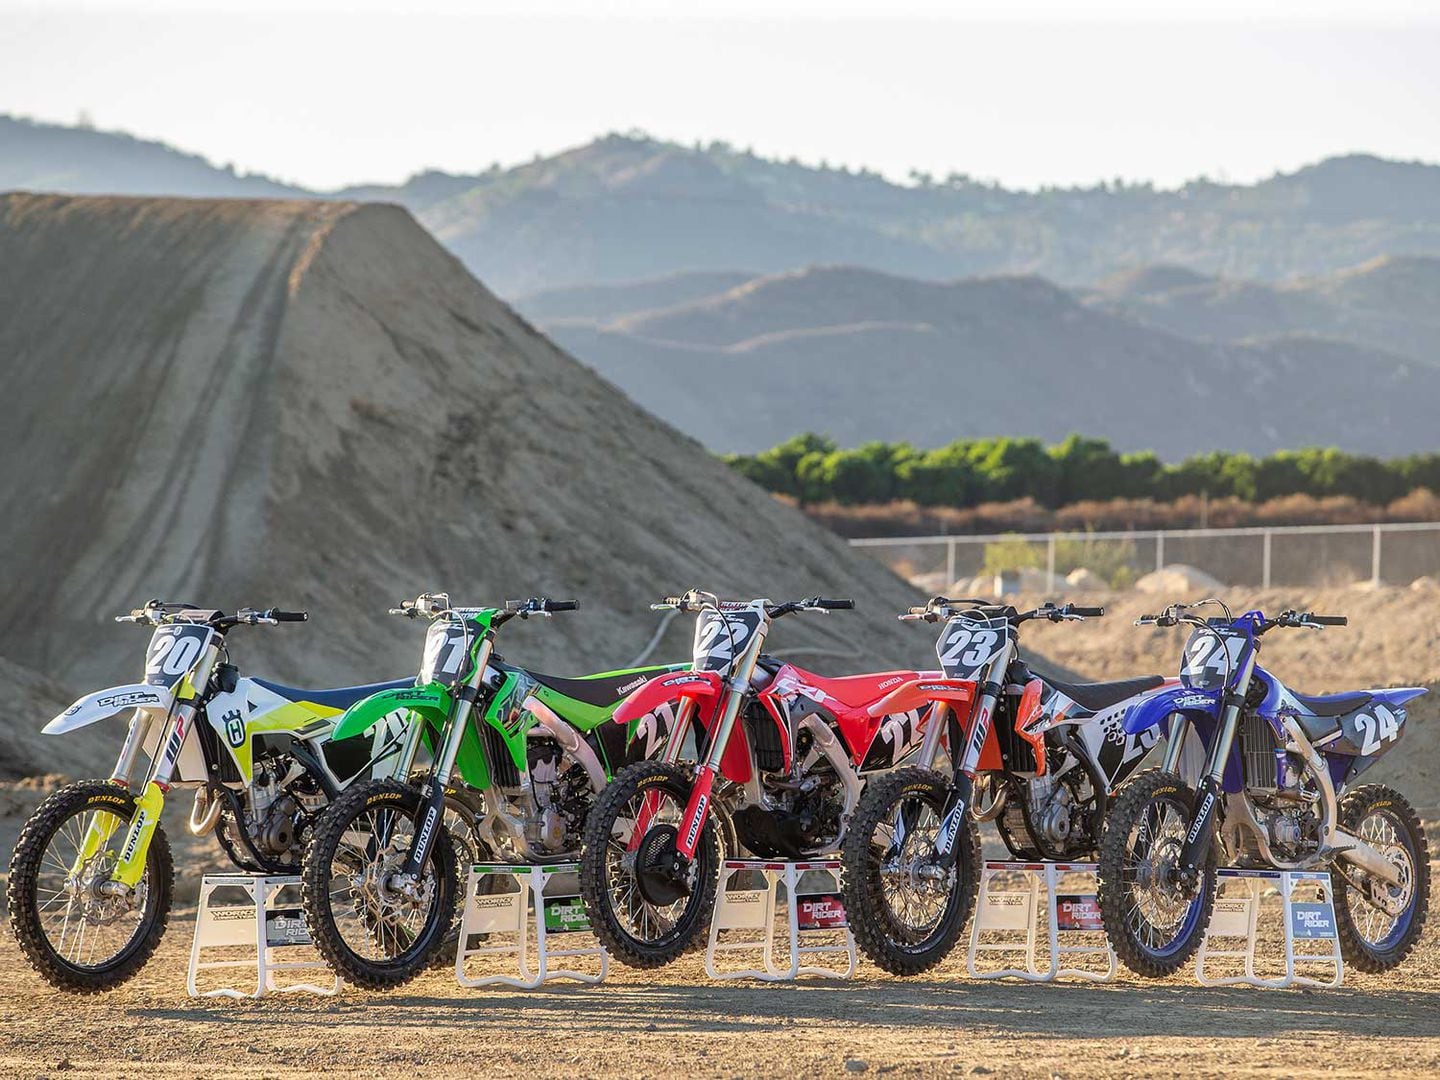 THE 2021 MXA 250 FOUR-STROKE SHOOTOUT: TODAS AS SETE BICICLETAS EM UM TESTE  - Motocross Action Magazine